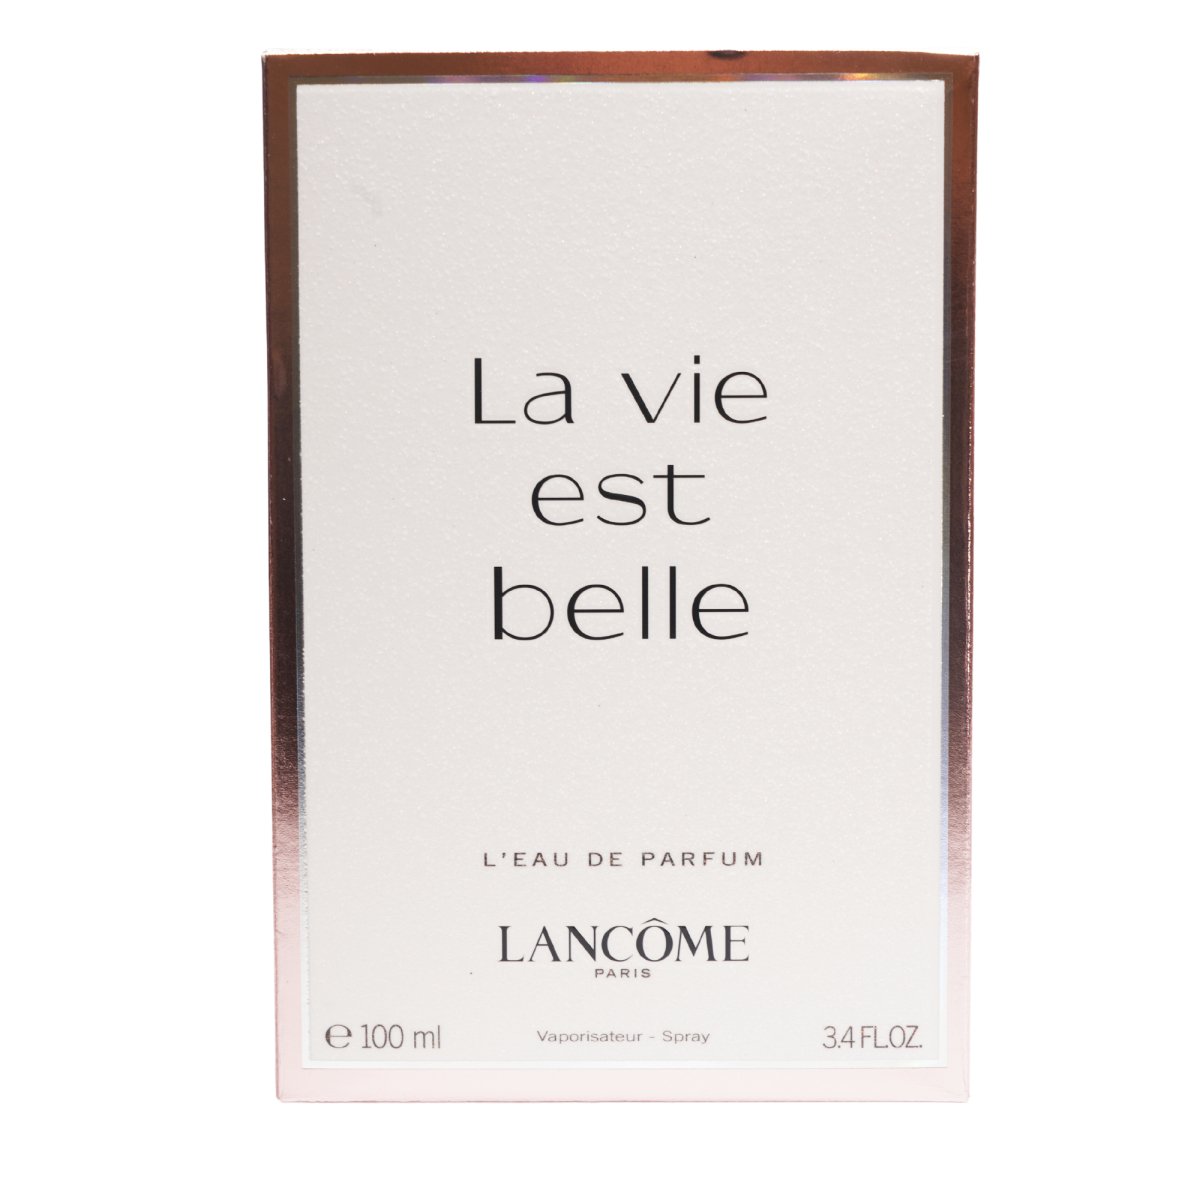 Lancôme La Vie Est Belle Eau de Parfum - Perfume Headquarters - Lancome - Fragrance